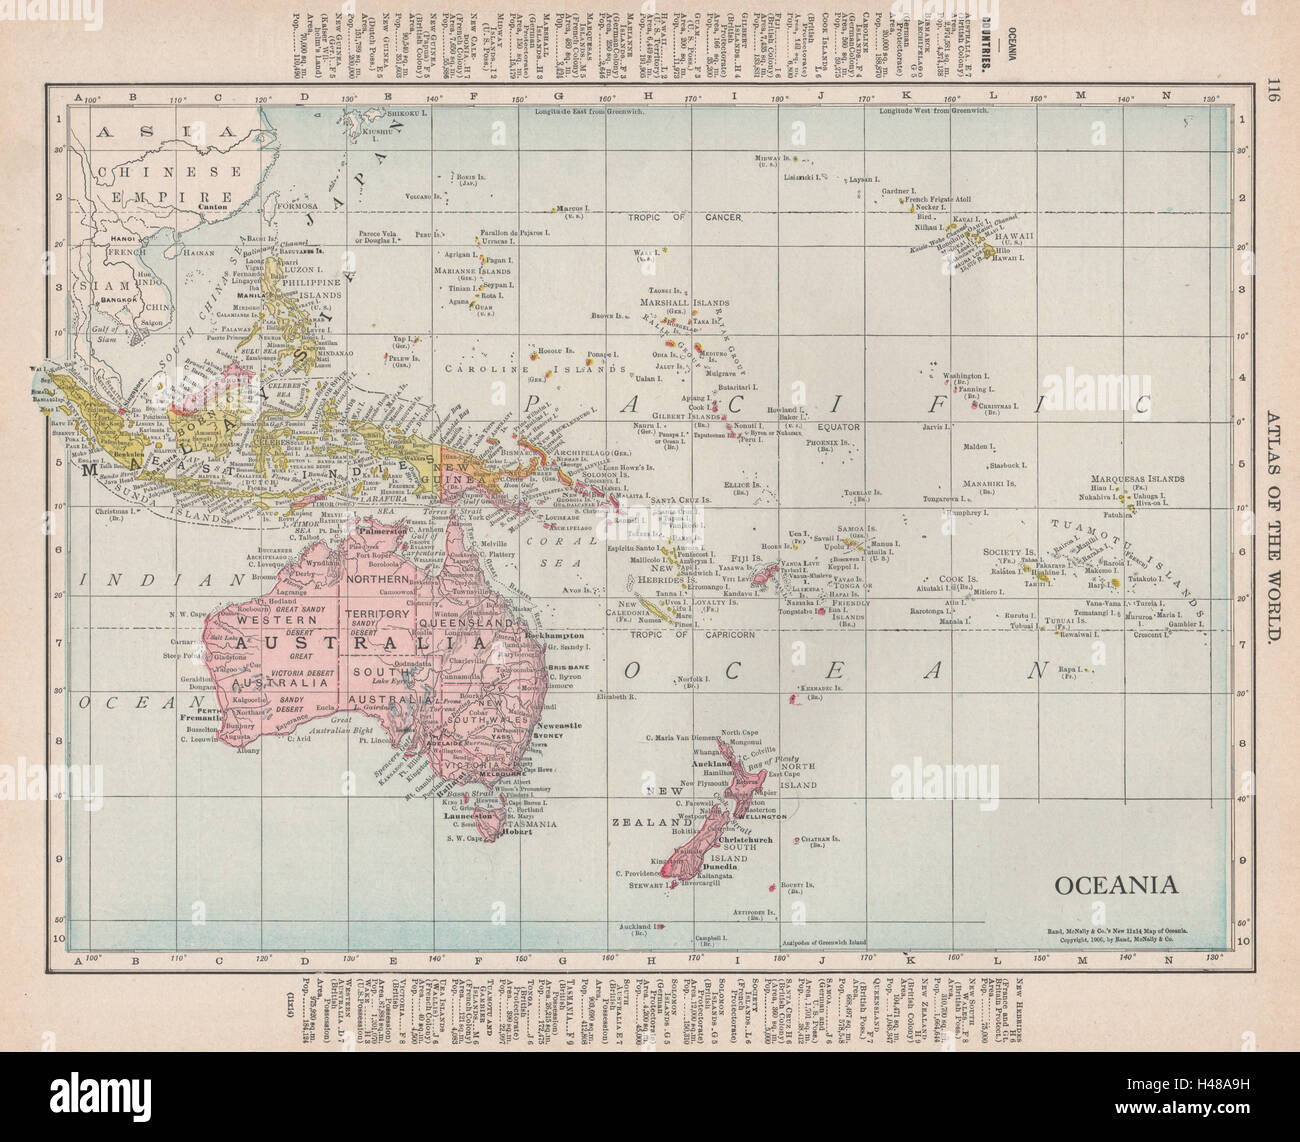 L'Océanie. L'Australasie Mélanésie Micronésie Polynésie Française. RAND MCNALLY 1912 Ancien site Banque D'Images